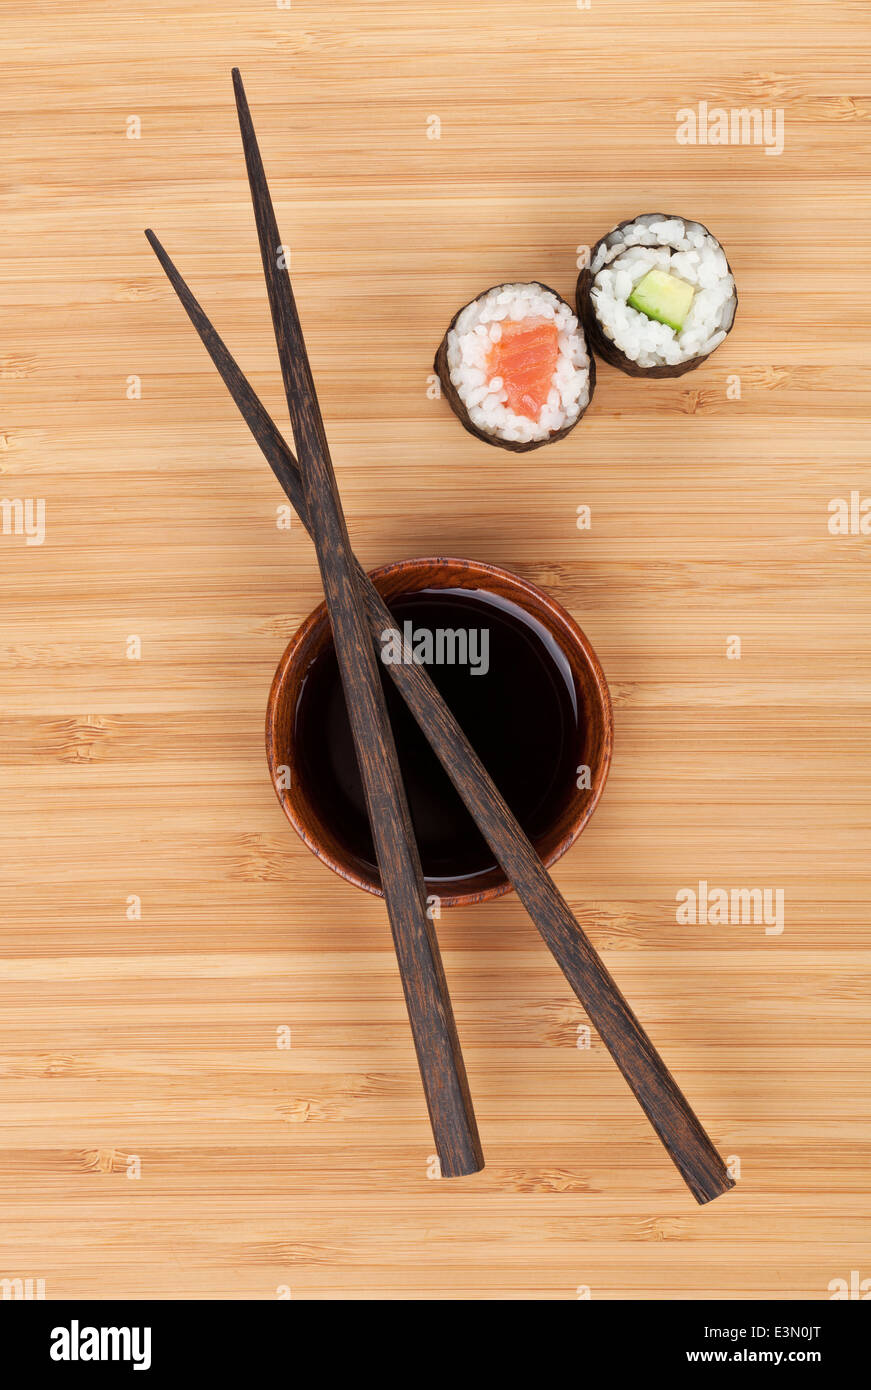 Maki Sushi, Stäbchen und Soja-Sauce auf Bambus Holztisch Hintergrund  Stockfotografie - Alamy